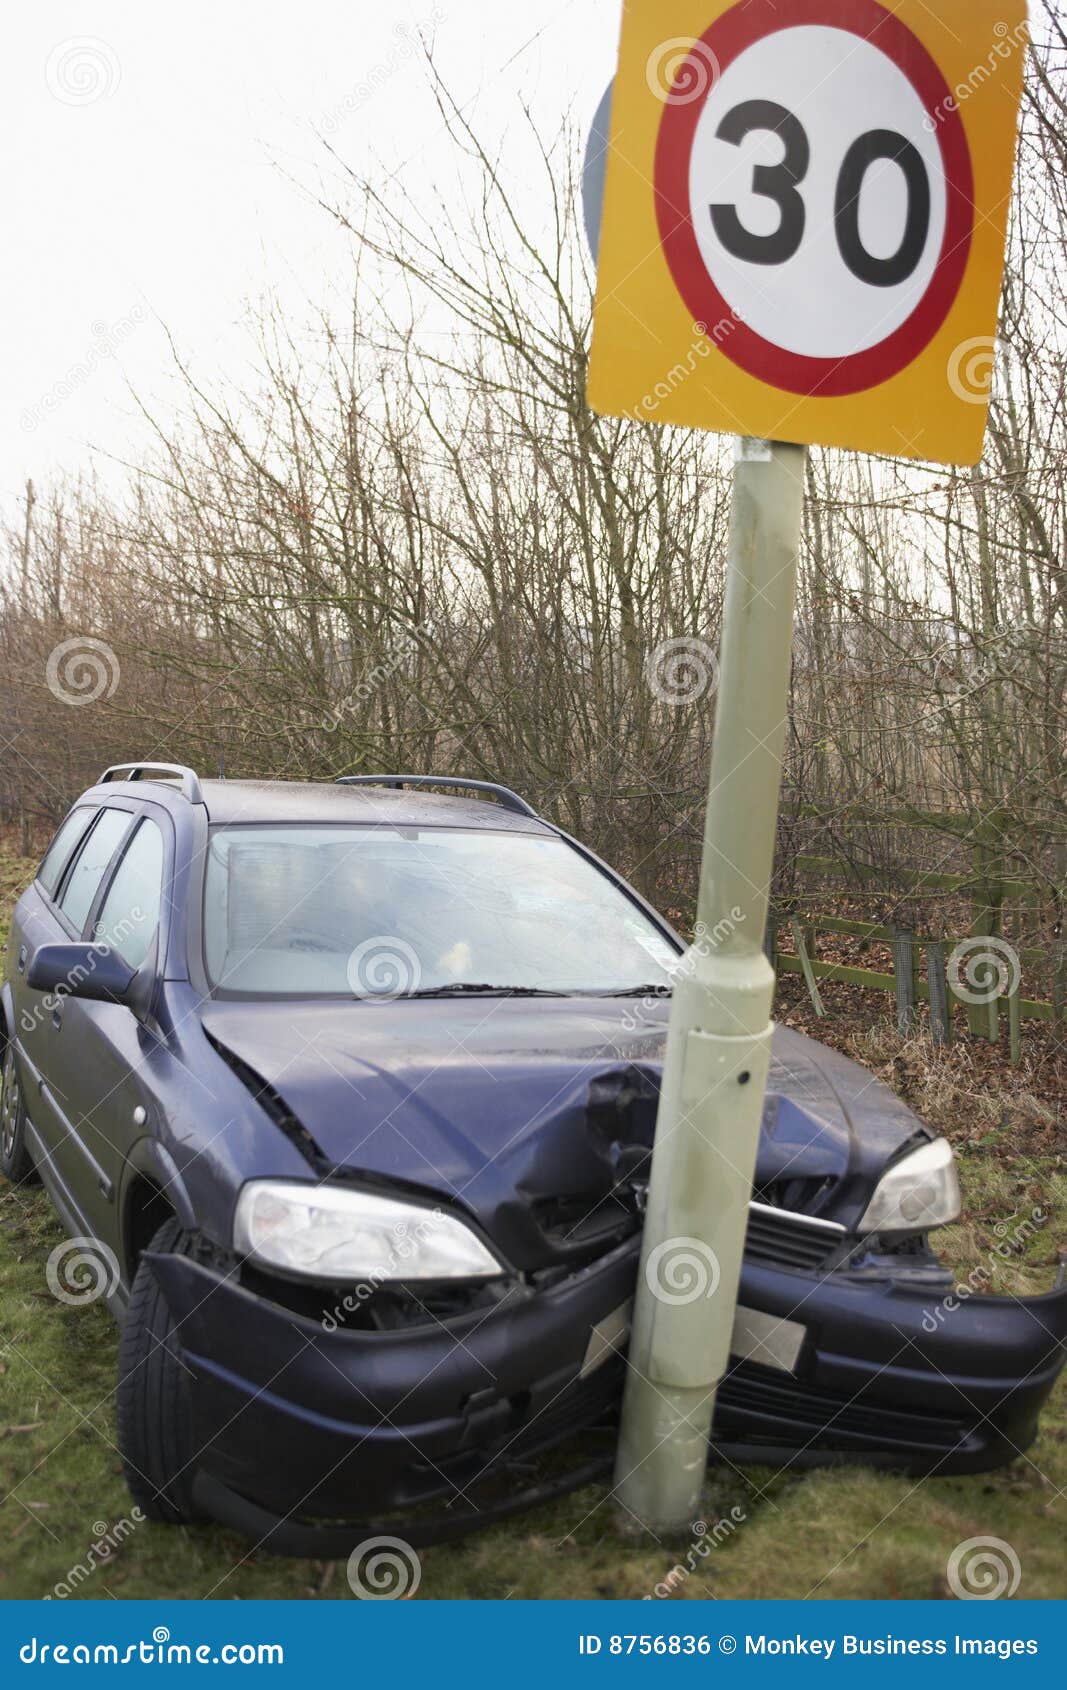 Сбило дорожным знаком. Машина врезалась в знак. Автомобиль врезался в дорожный знак. Машина въехала в дорожный знак. Машина влепилась в знак.